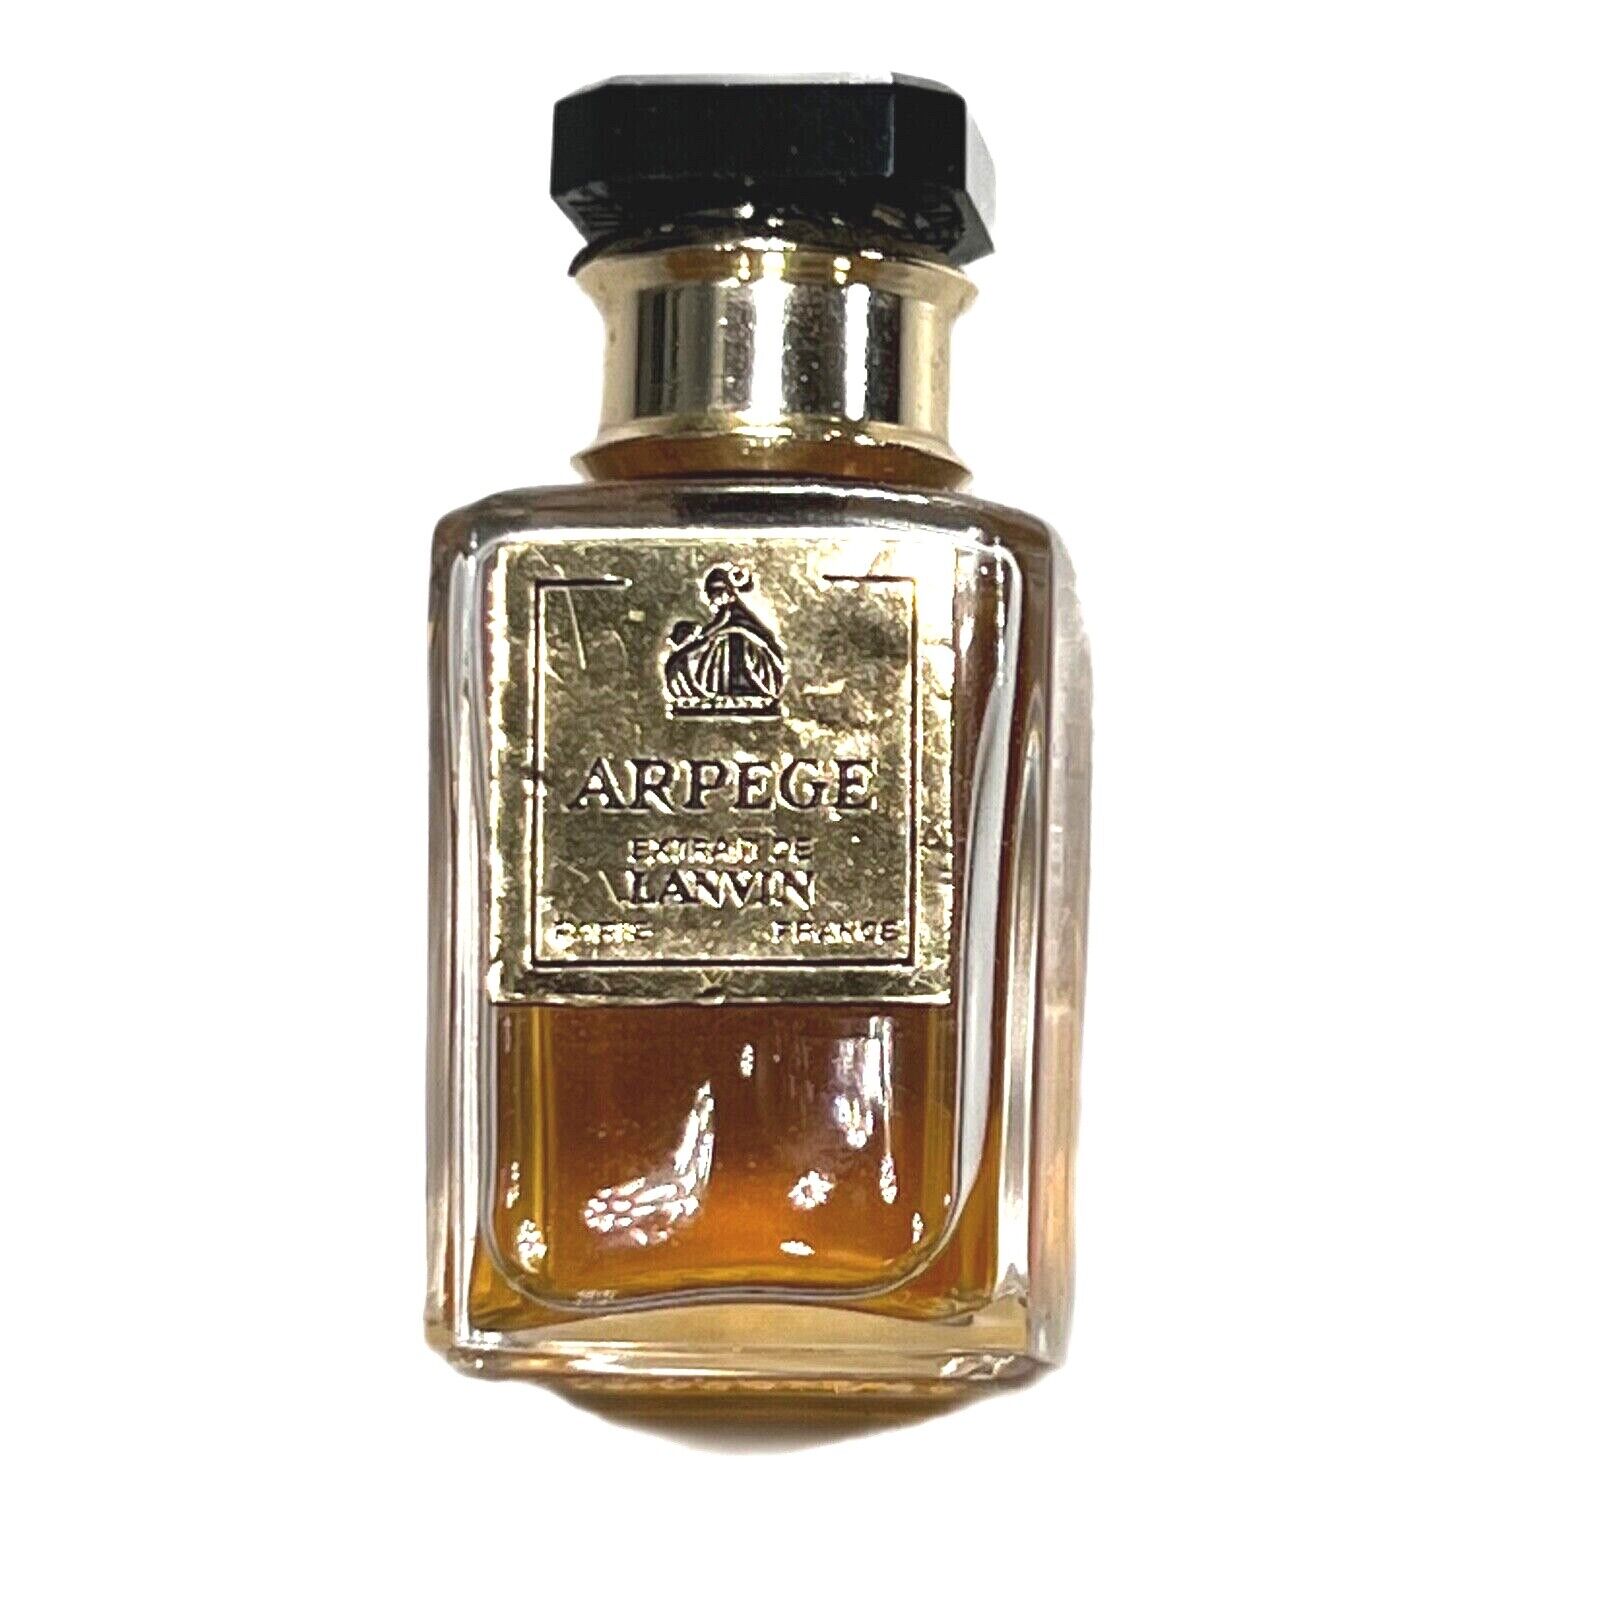 VTG Arpege Extrait de Lanvin Paris Perfume 1/4 oz Glass Bottle Paris France 